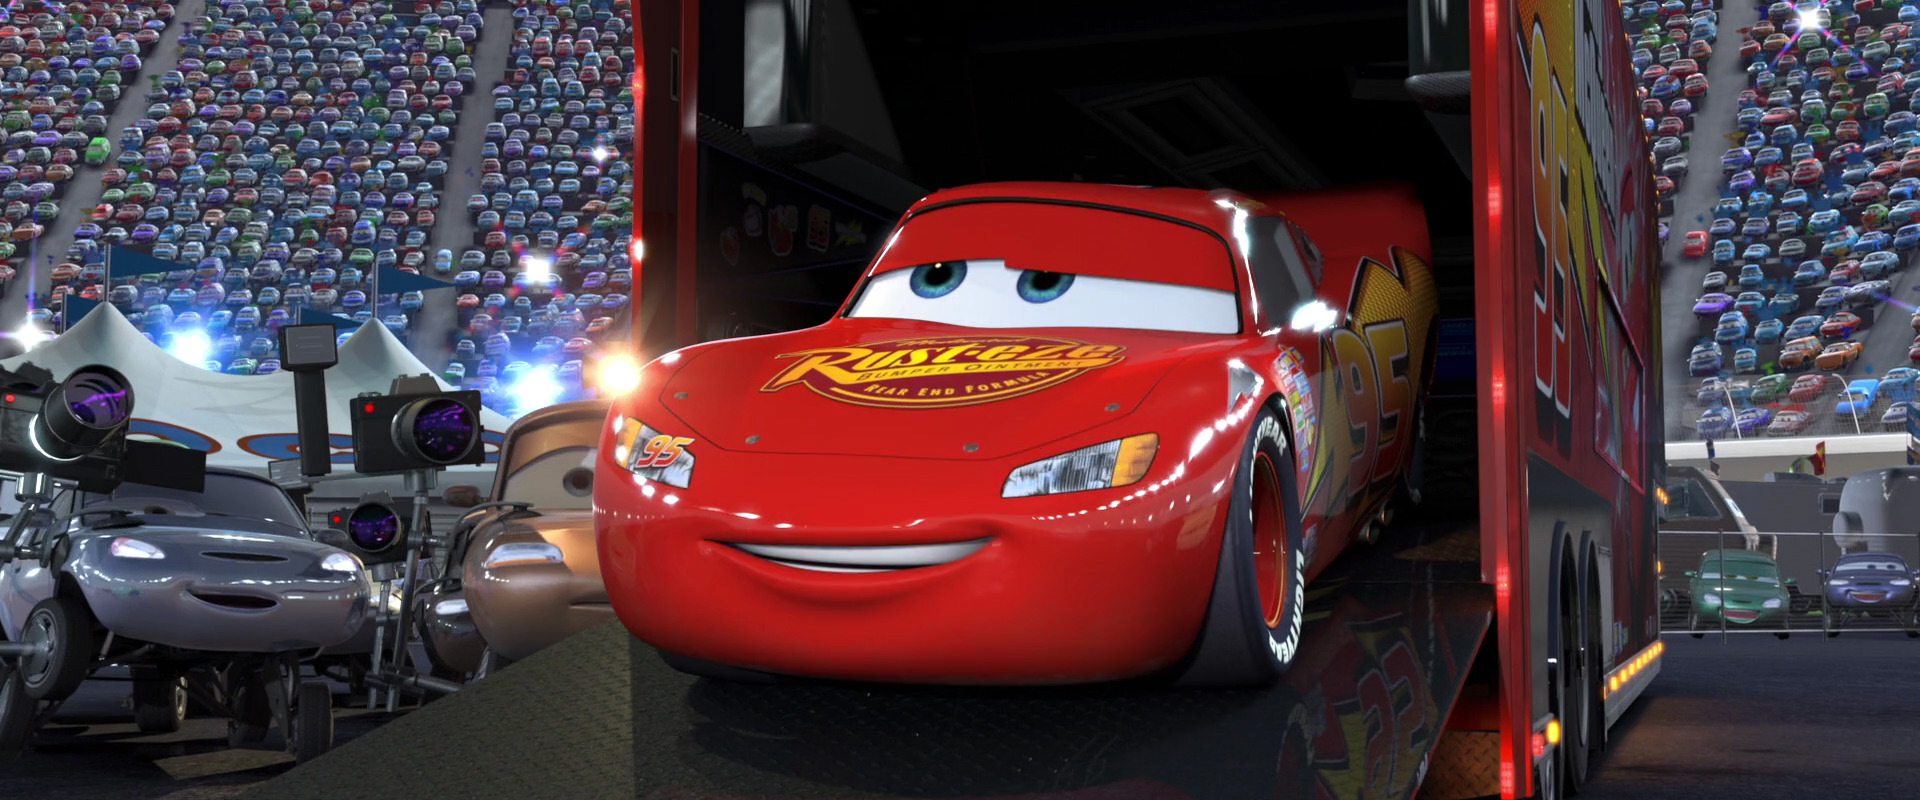 Mattel Disney Cars Bling Bling Lightning McQueen Dinoco Piston Cup Racer  (2022 Thailand Variant) 